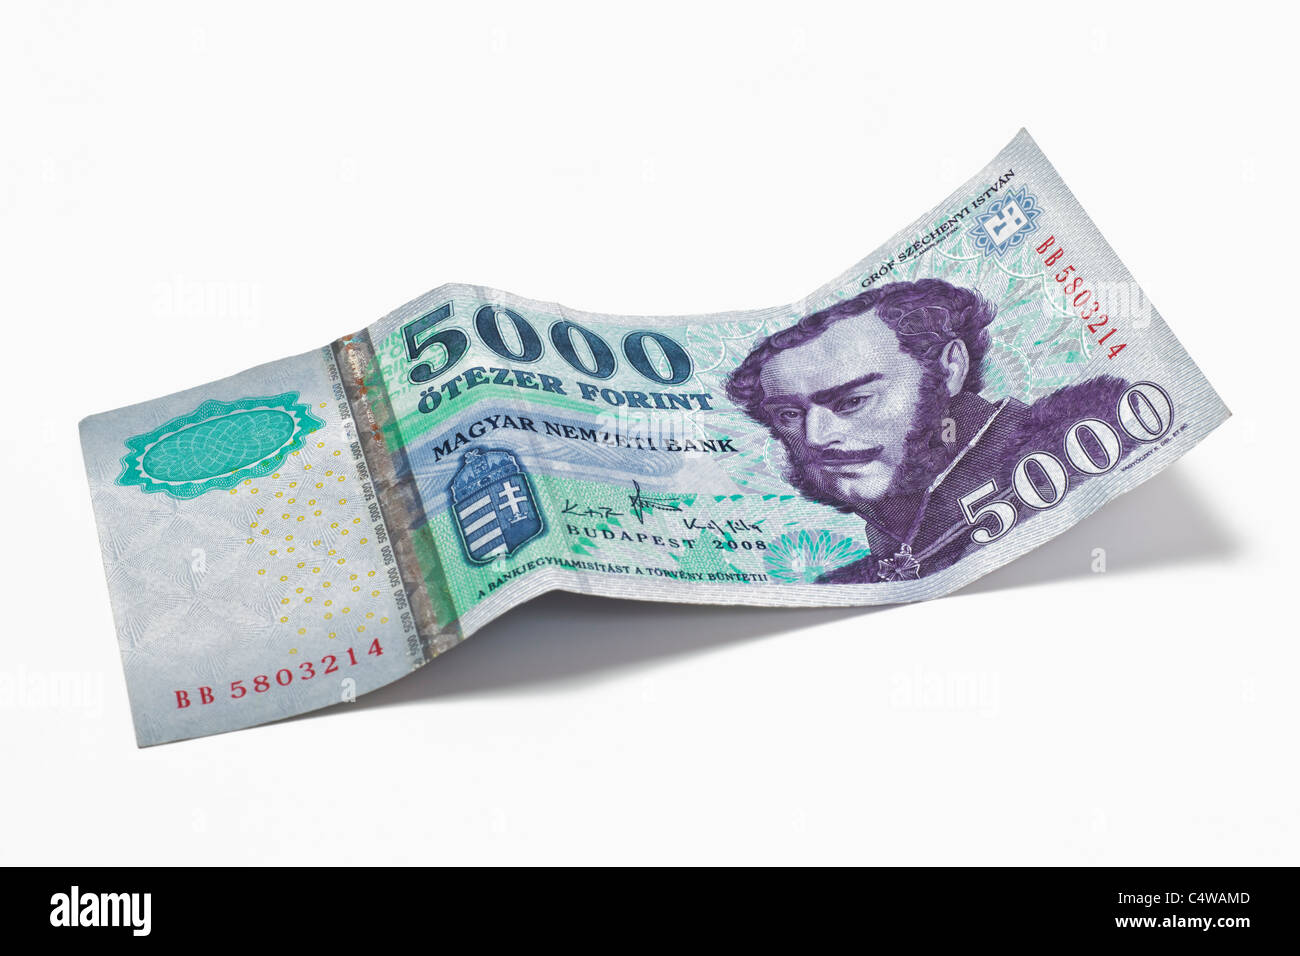 Von Detailansicht ungarischen Forint 5000 Billet de banque | photo détail d'un billet de 5 000 forint hongrois Banque D'Images